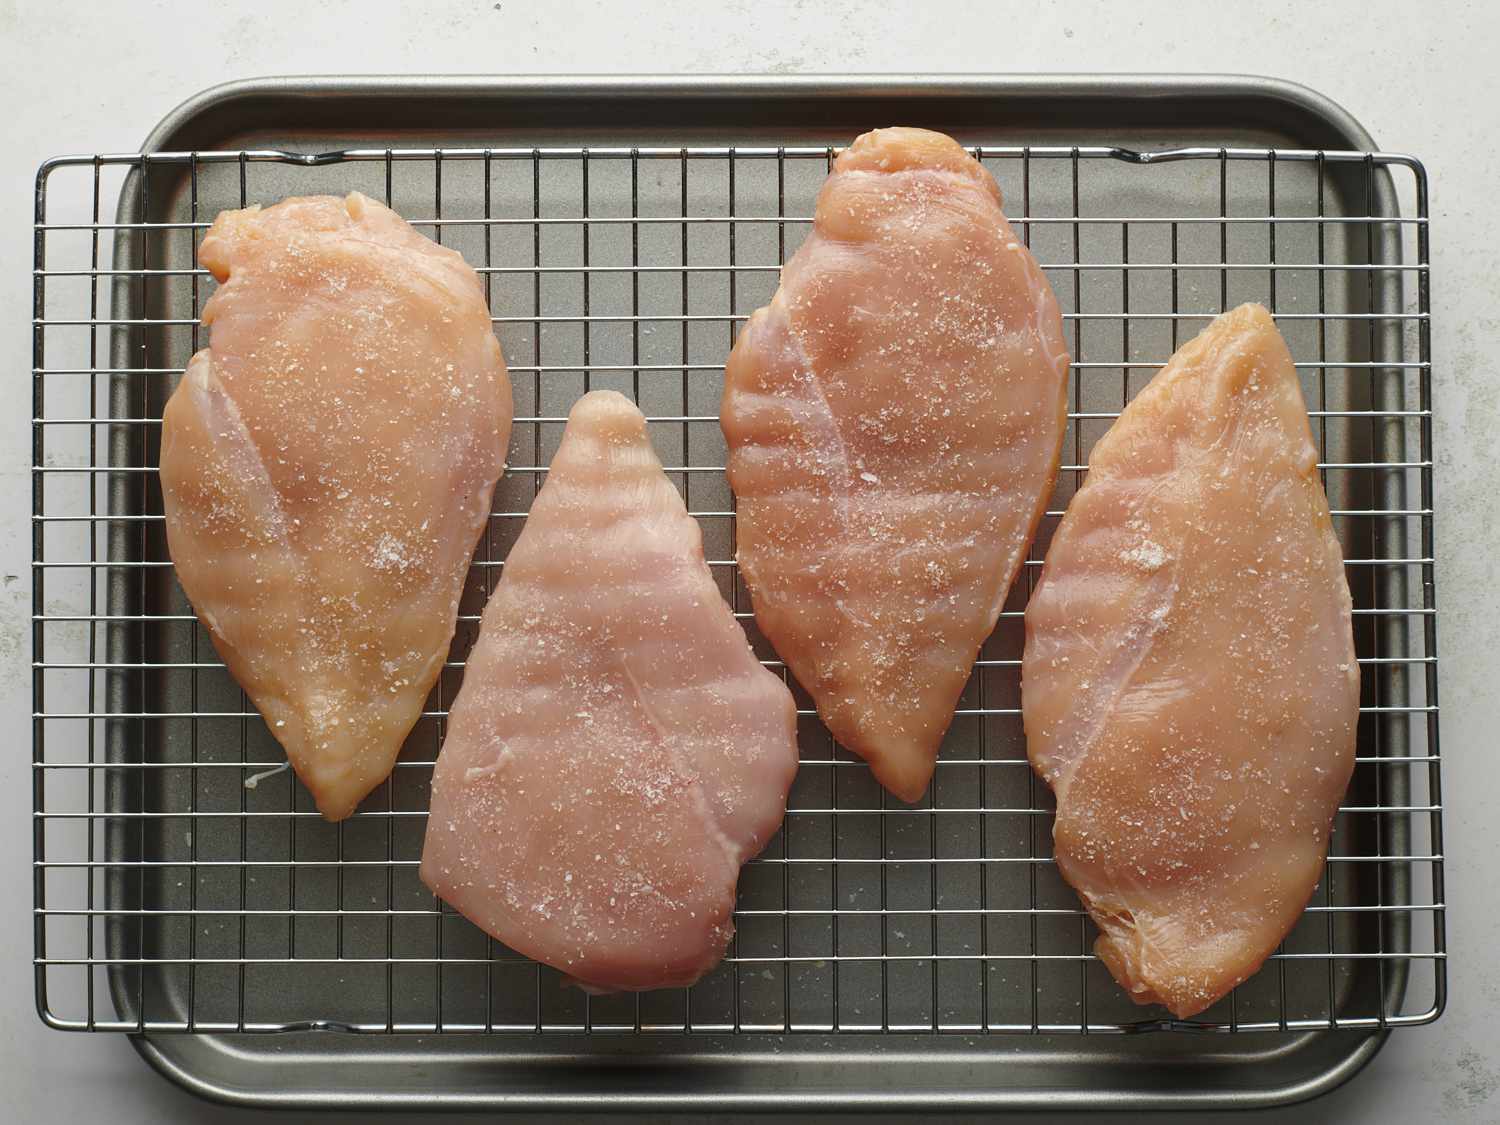 四个去骨去皮的鸡胸肉放在铁丝架上，放在一个小烤盘上。鸡胸肉已经被捣碎得有点平，撒上盐，表明它们是干卤水。gydF4y2Ba